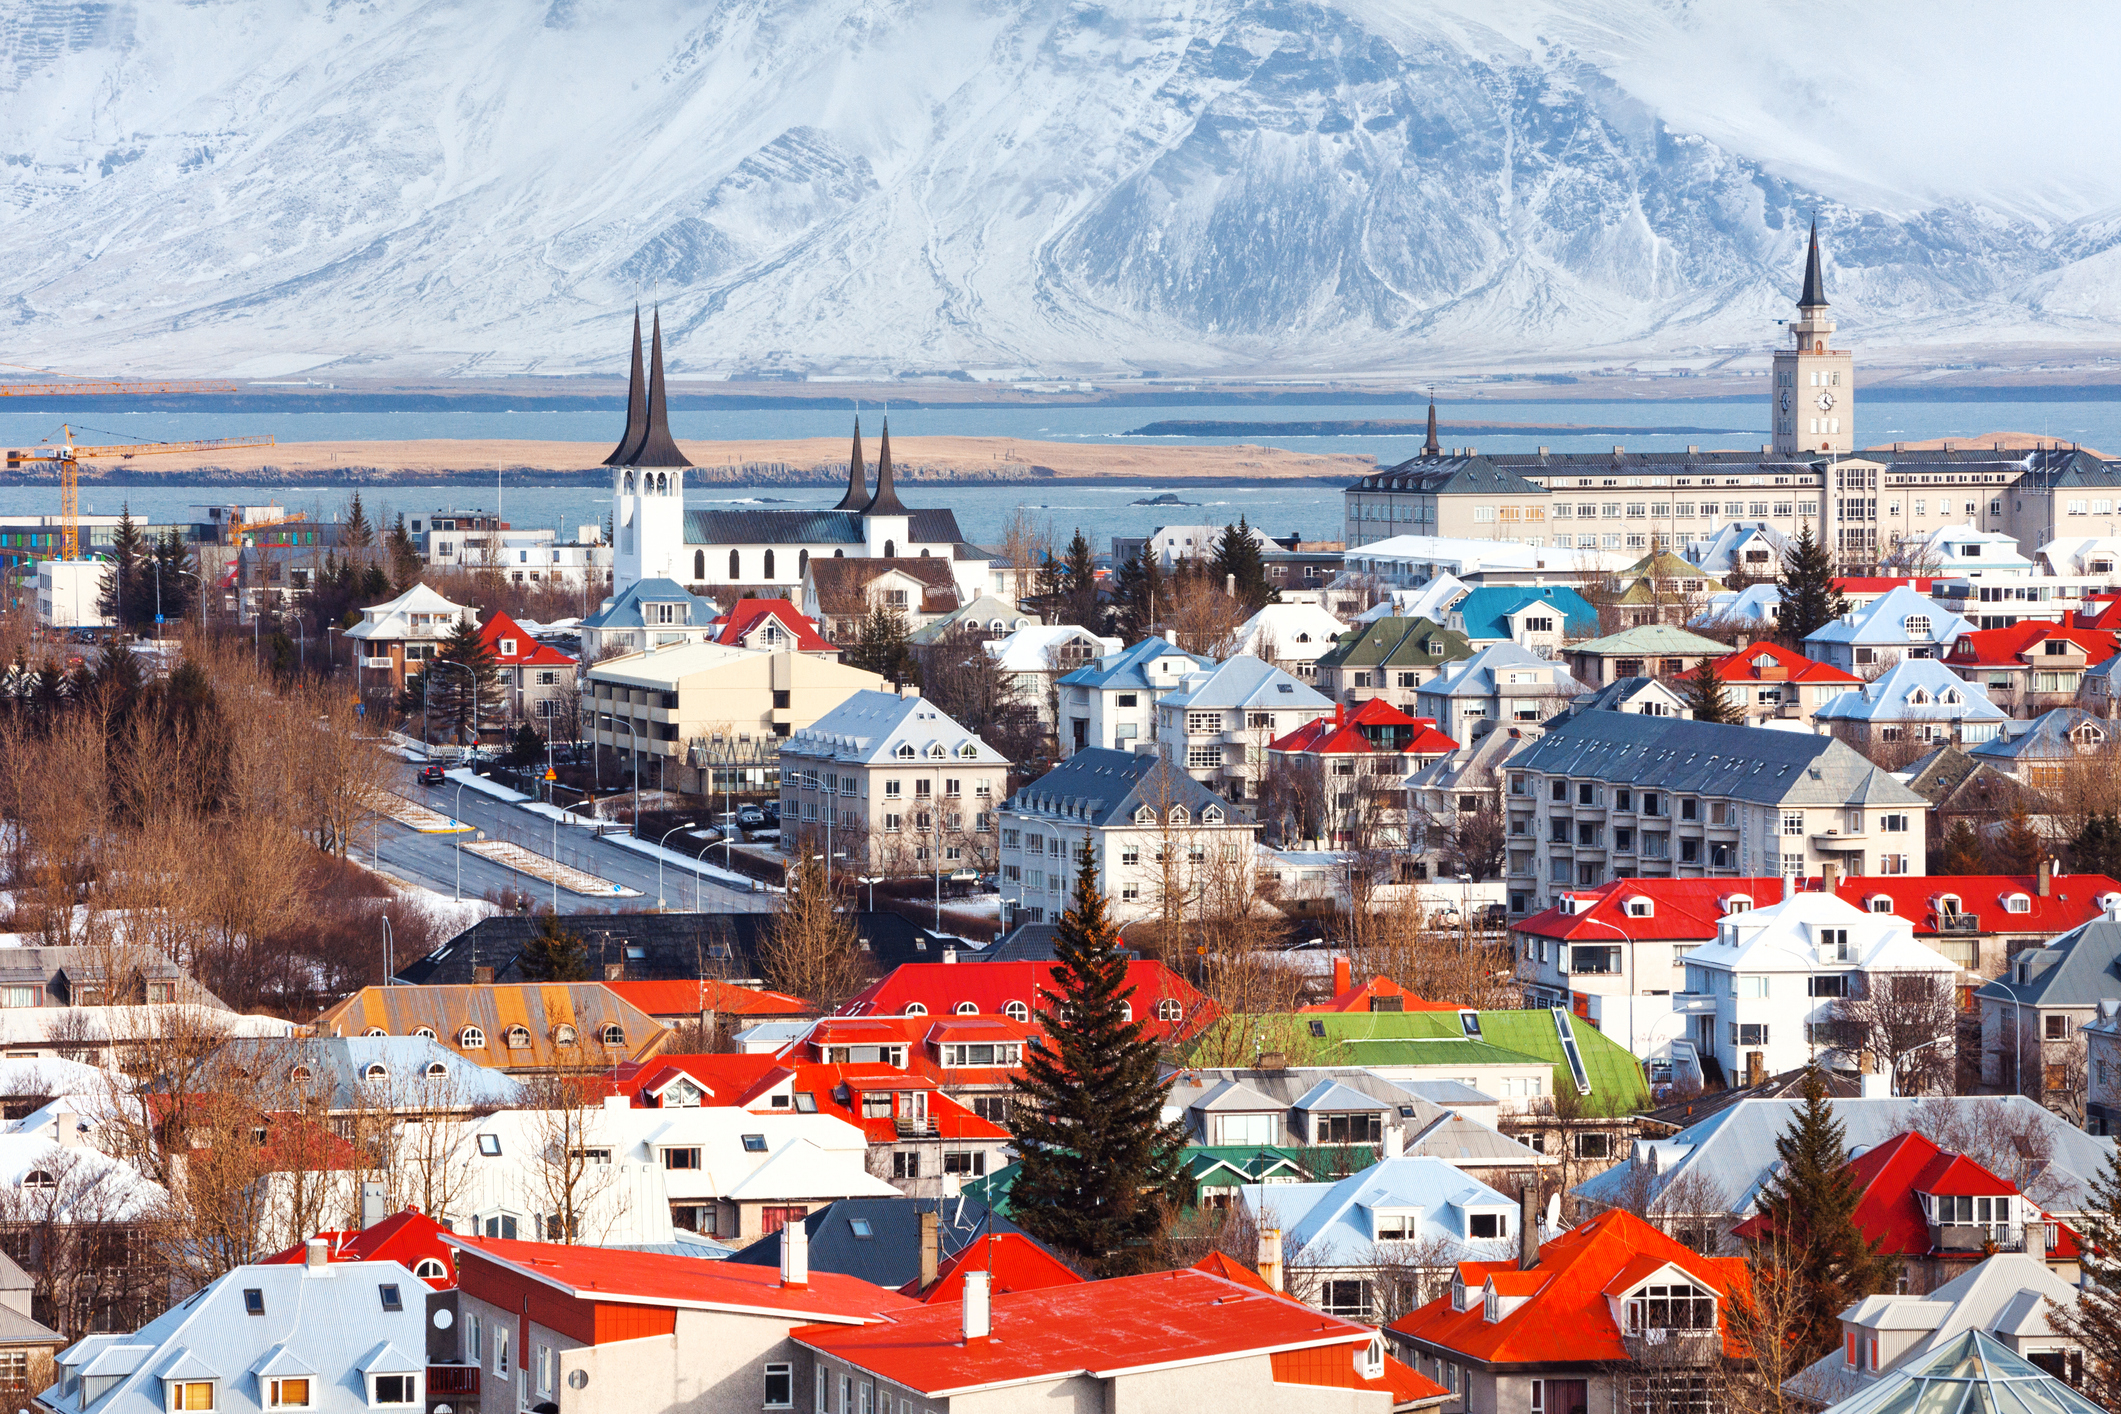 Aerial view of Reykjavik